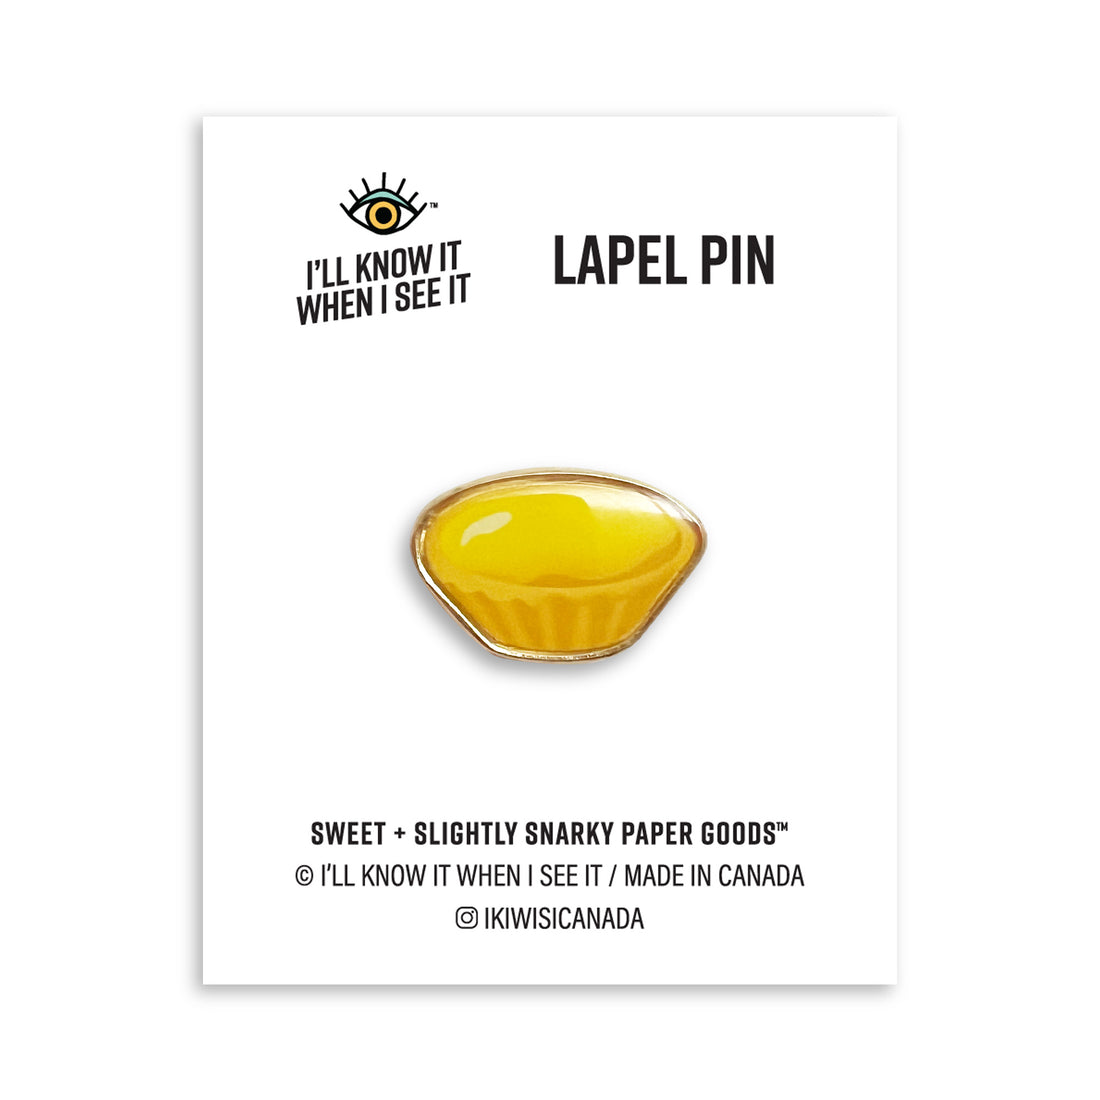 Egg tart lapel pin by I&